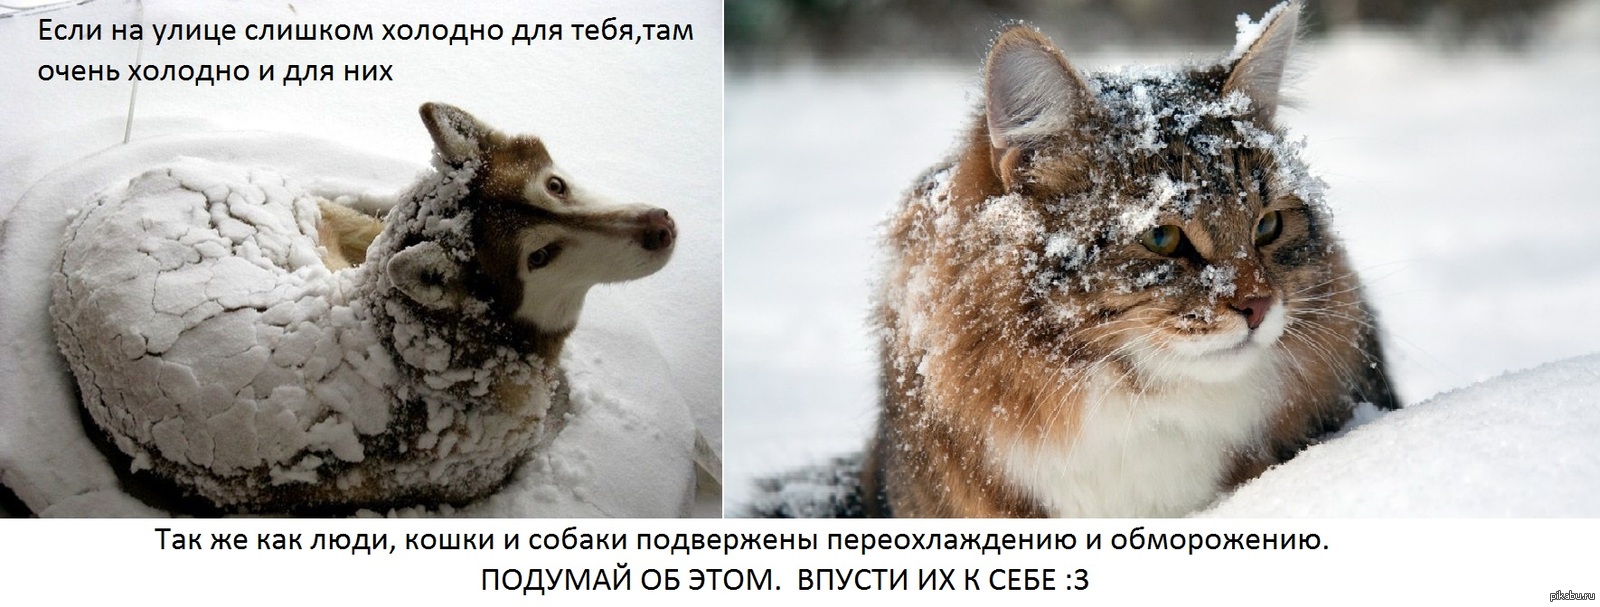 Мороза стань сильнее. Бездомные животные зима. Замерзающие бездомные животные. Помогайте бездомным животным в Морозы. Бездомные животные мерзнут.